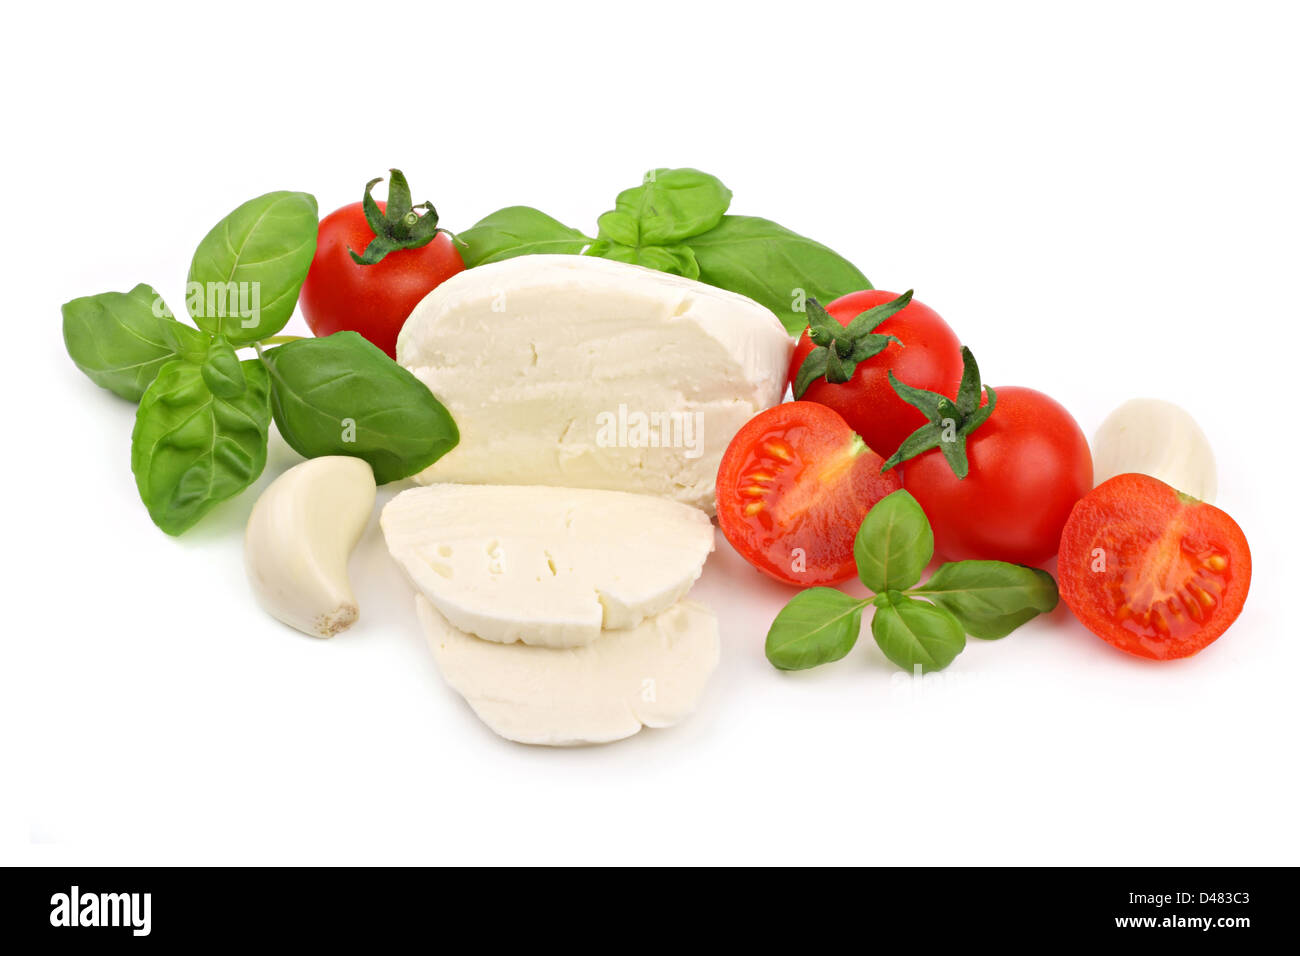 Ingrédients alimentaires italiennes sur fond blanc Banque D'Images